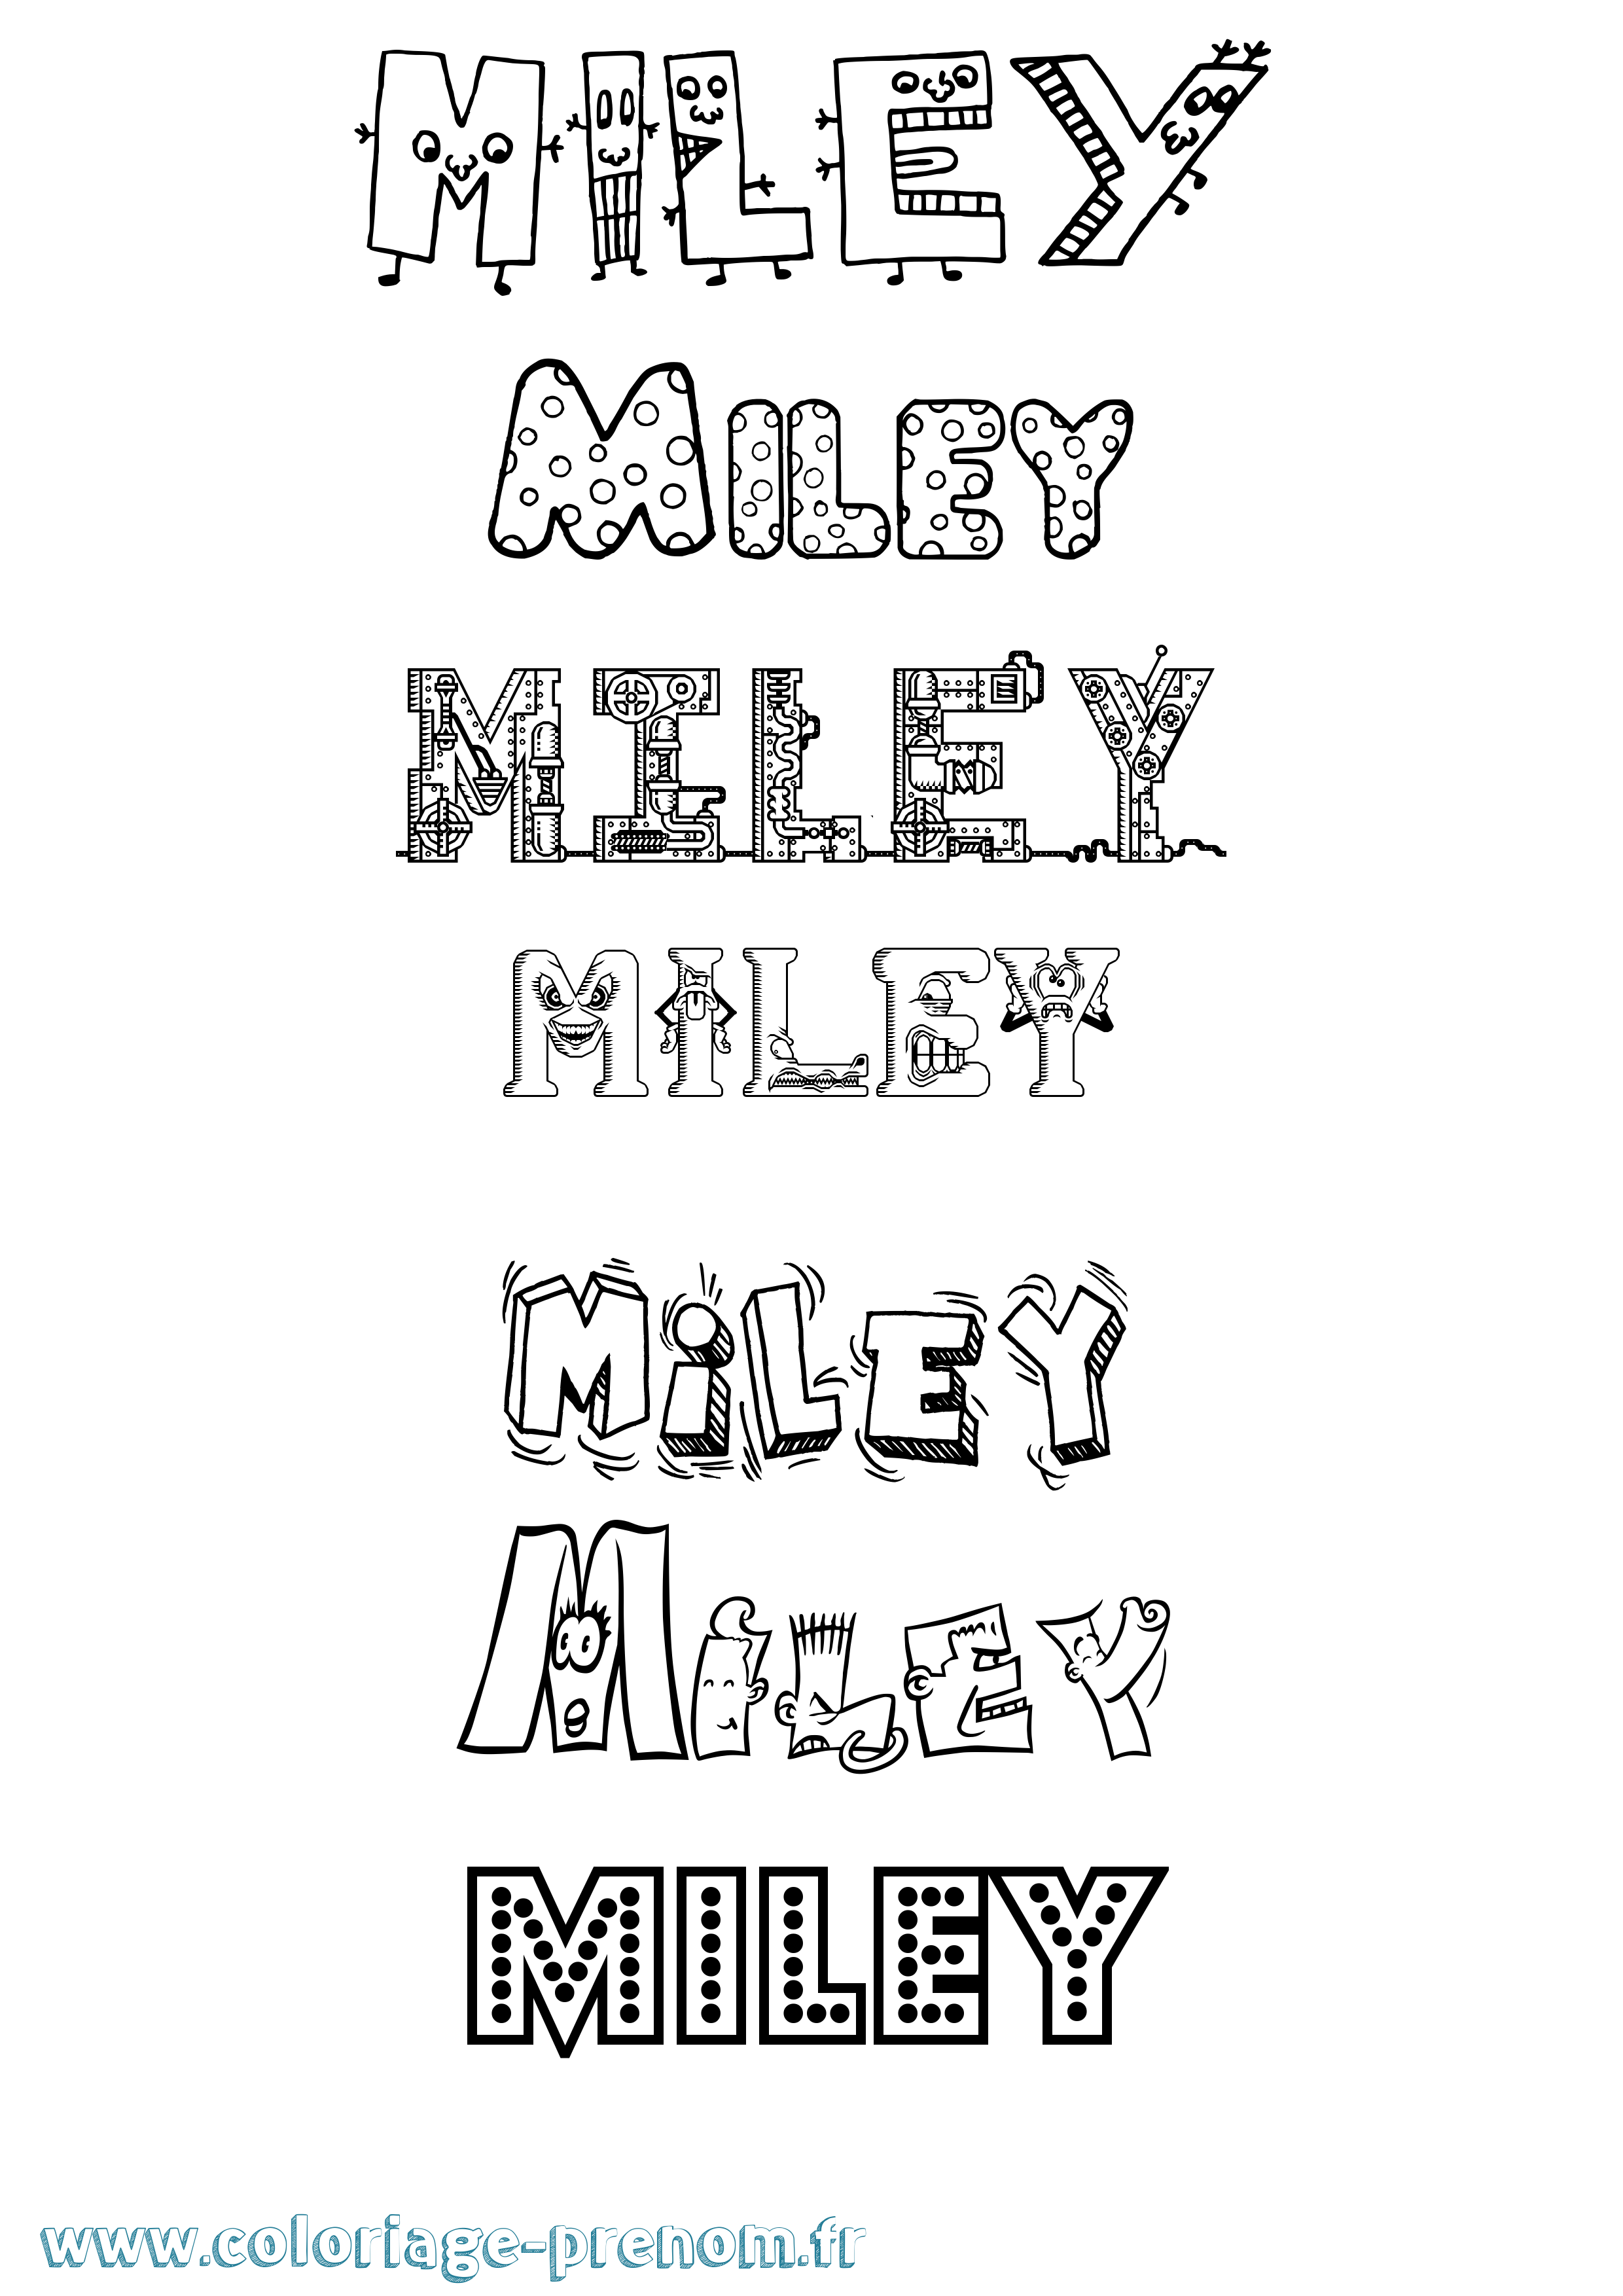 Coloriage prénom Miley Fun